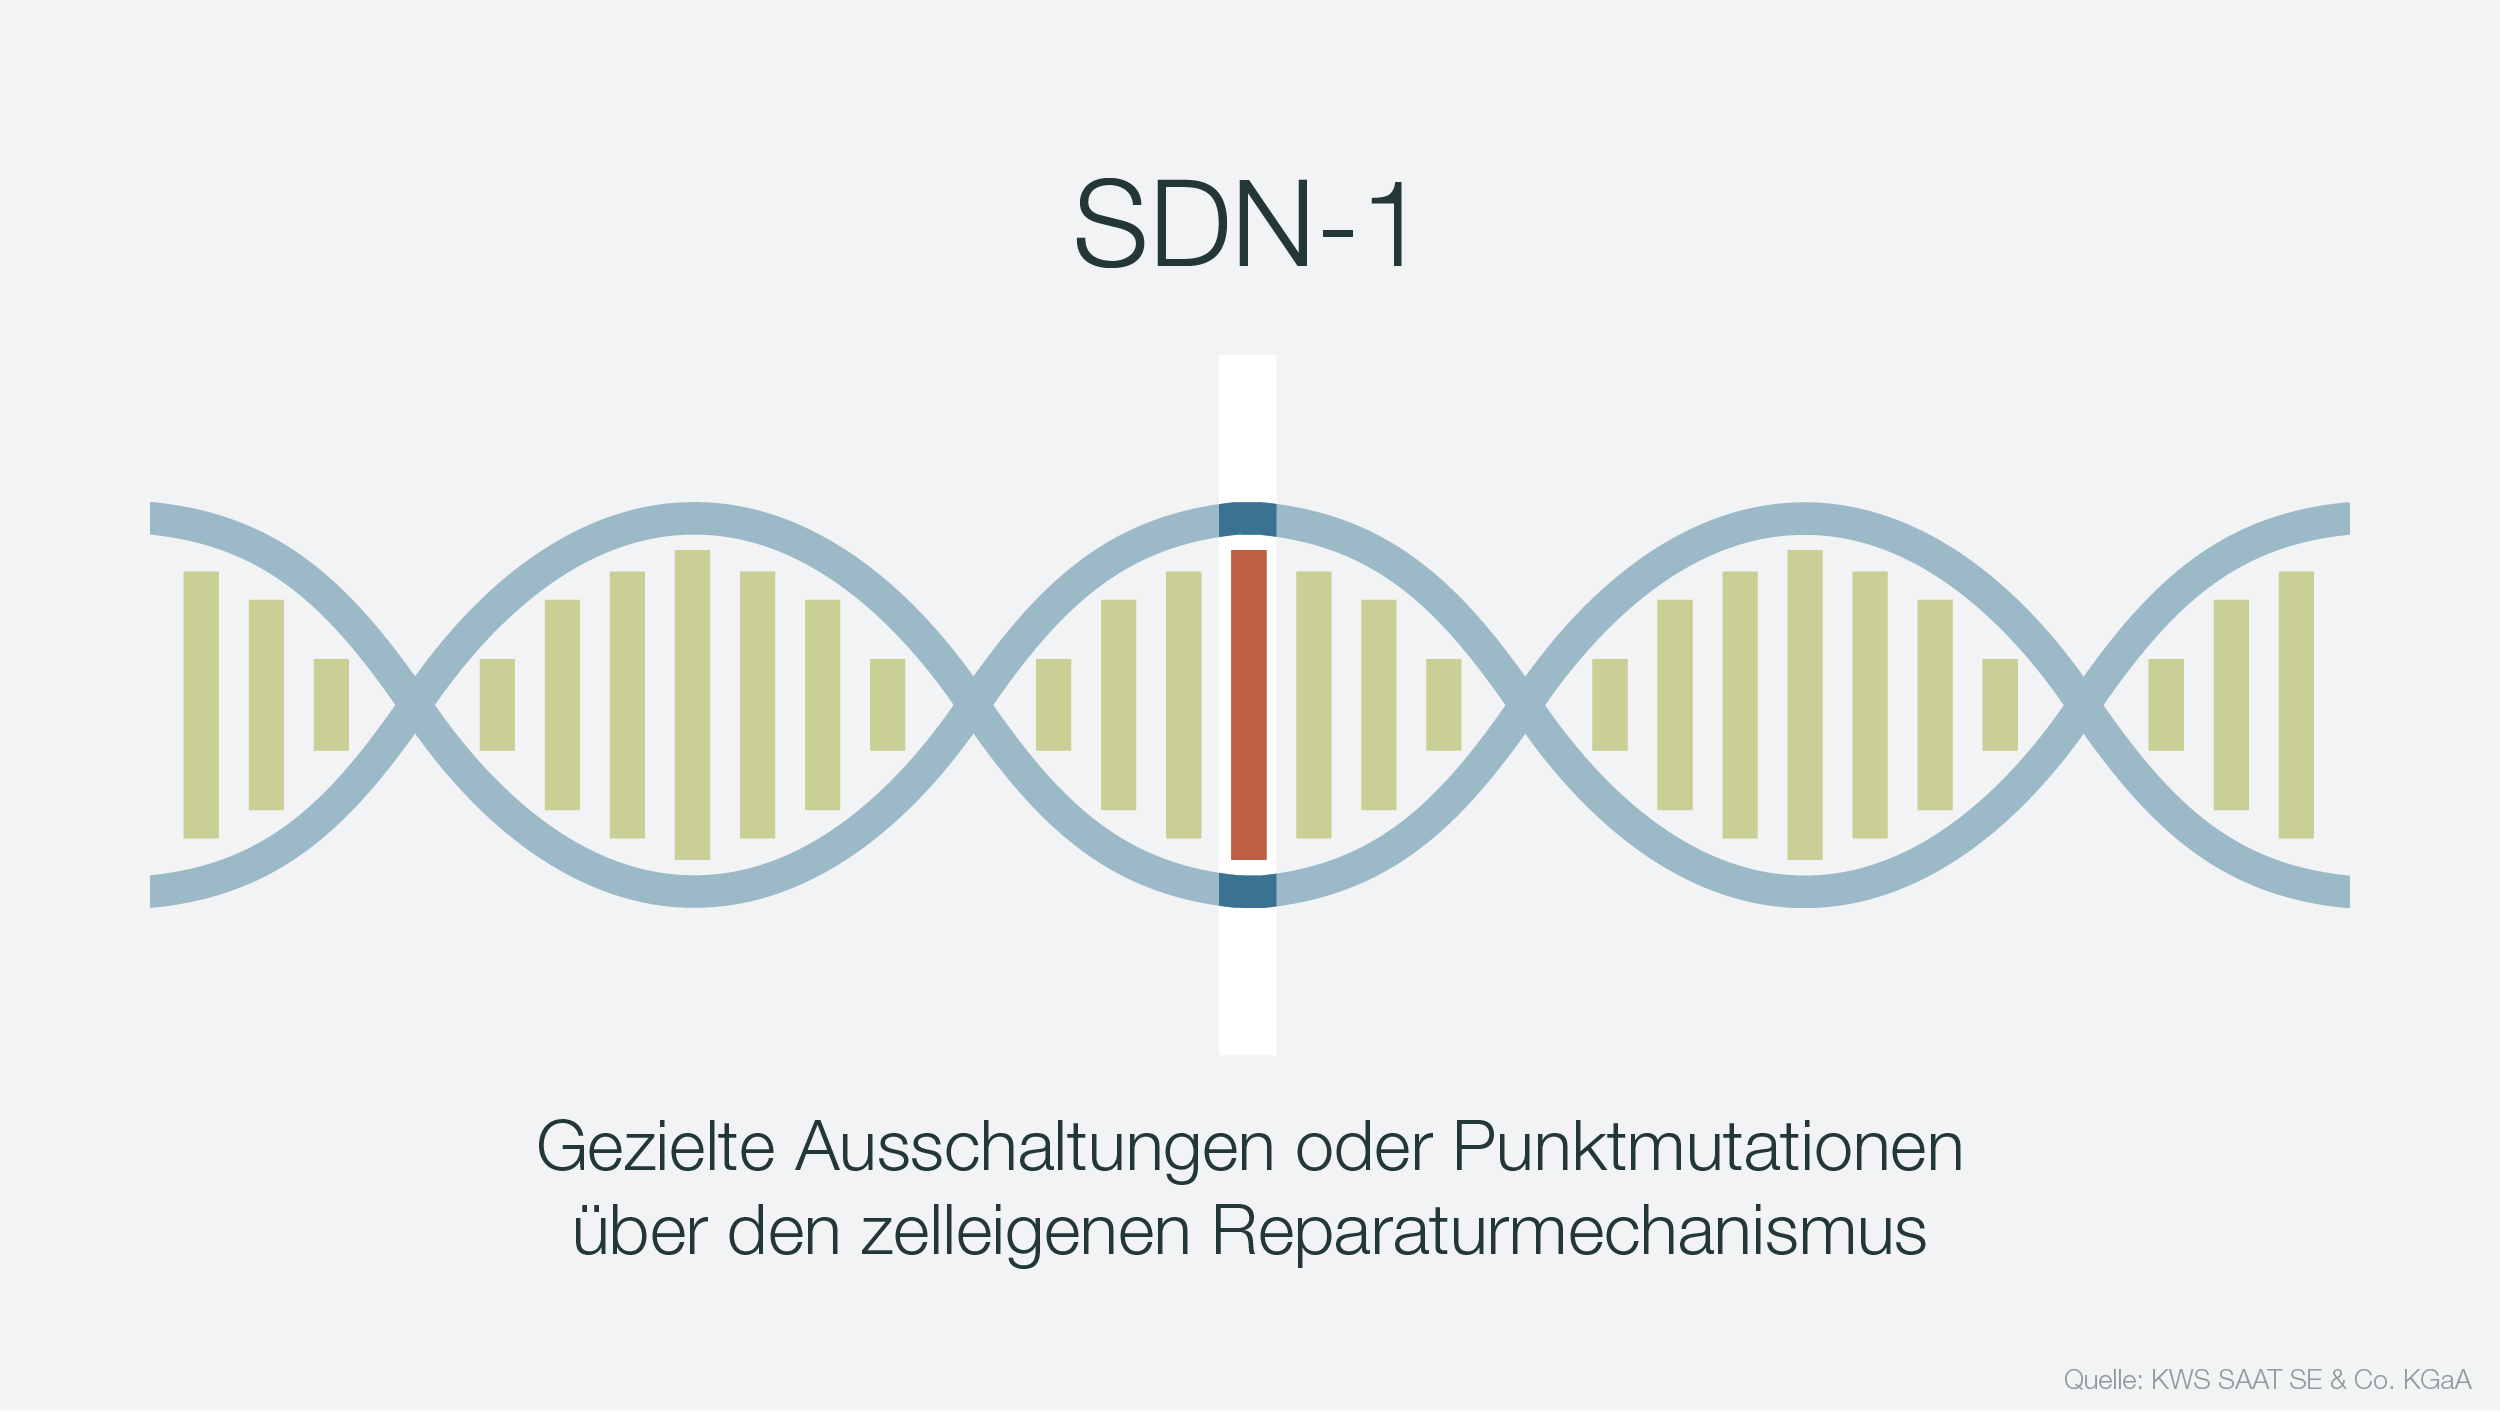 Infografik zur DNA-Manipulation SDN-2